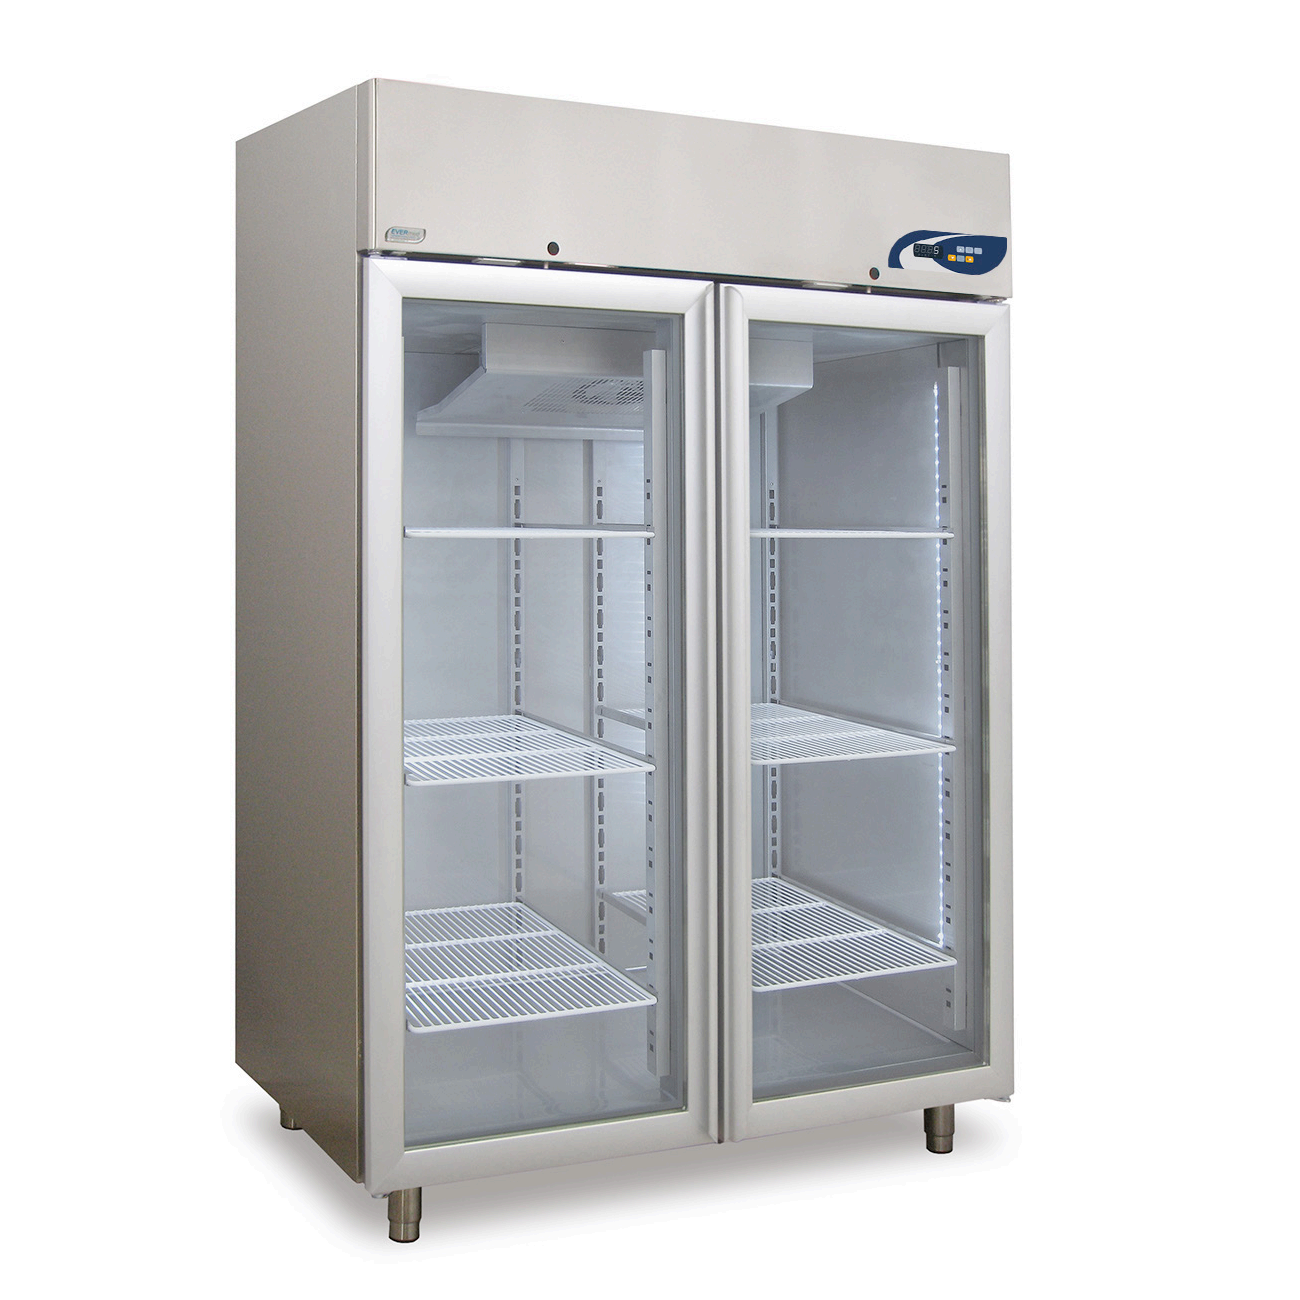 Tủ lạnh bảo quan mẫu MPR 925 +2°C to +15°C